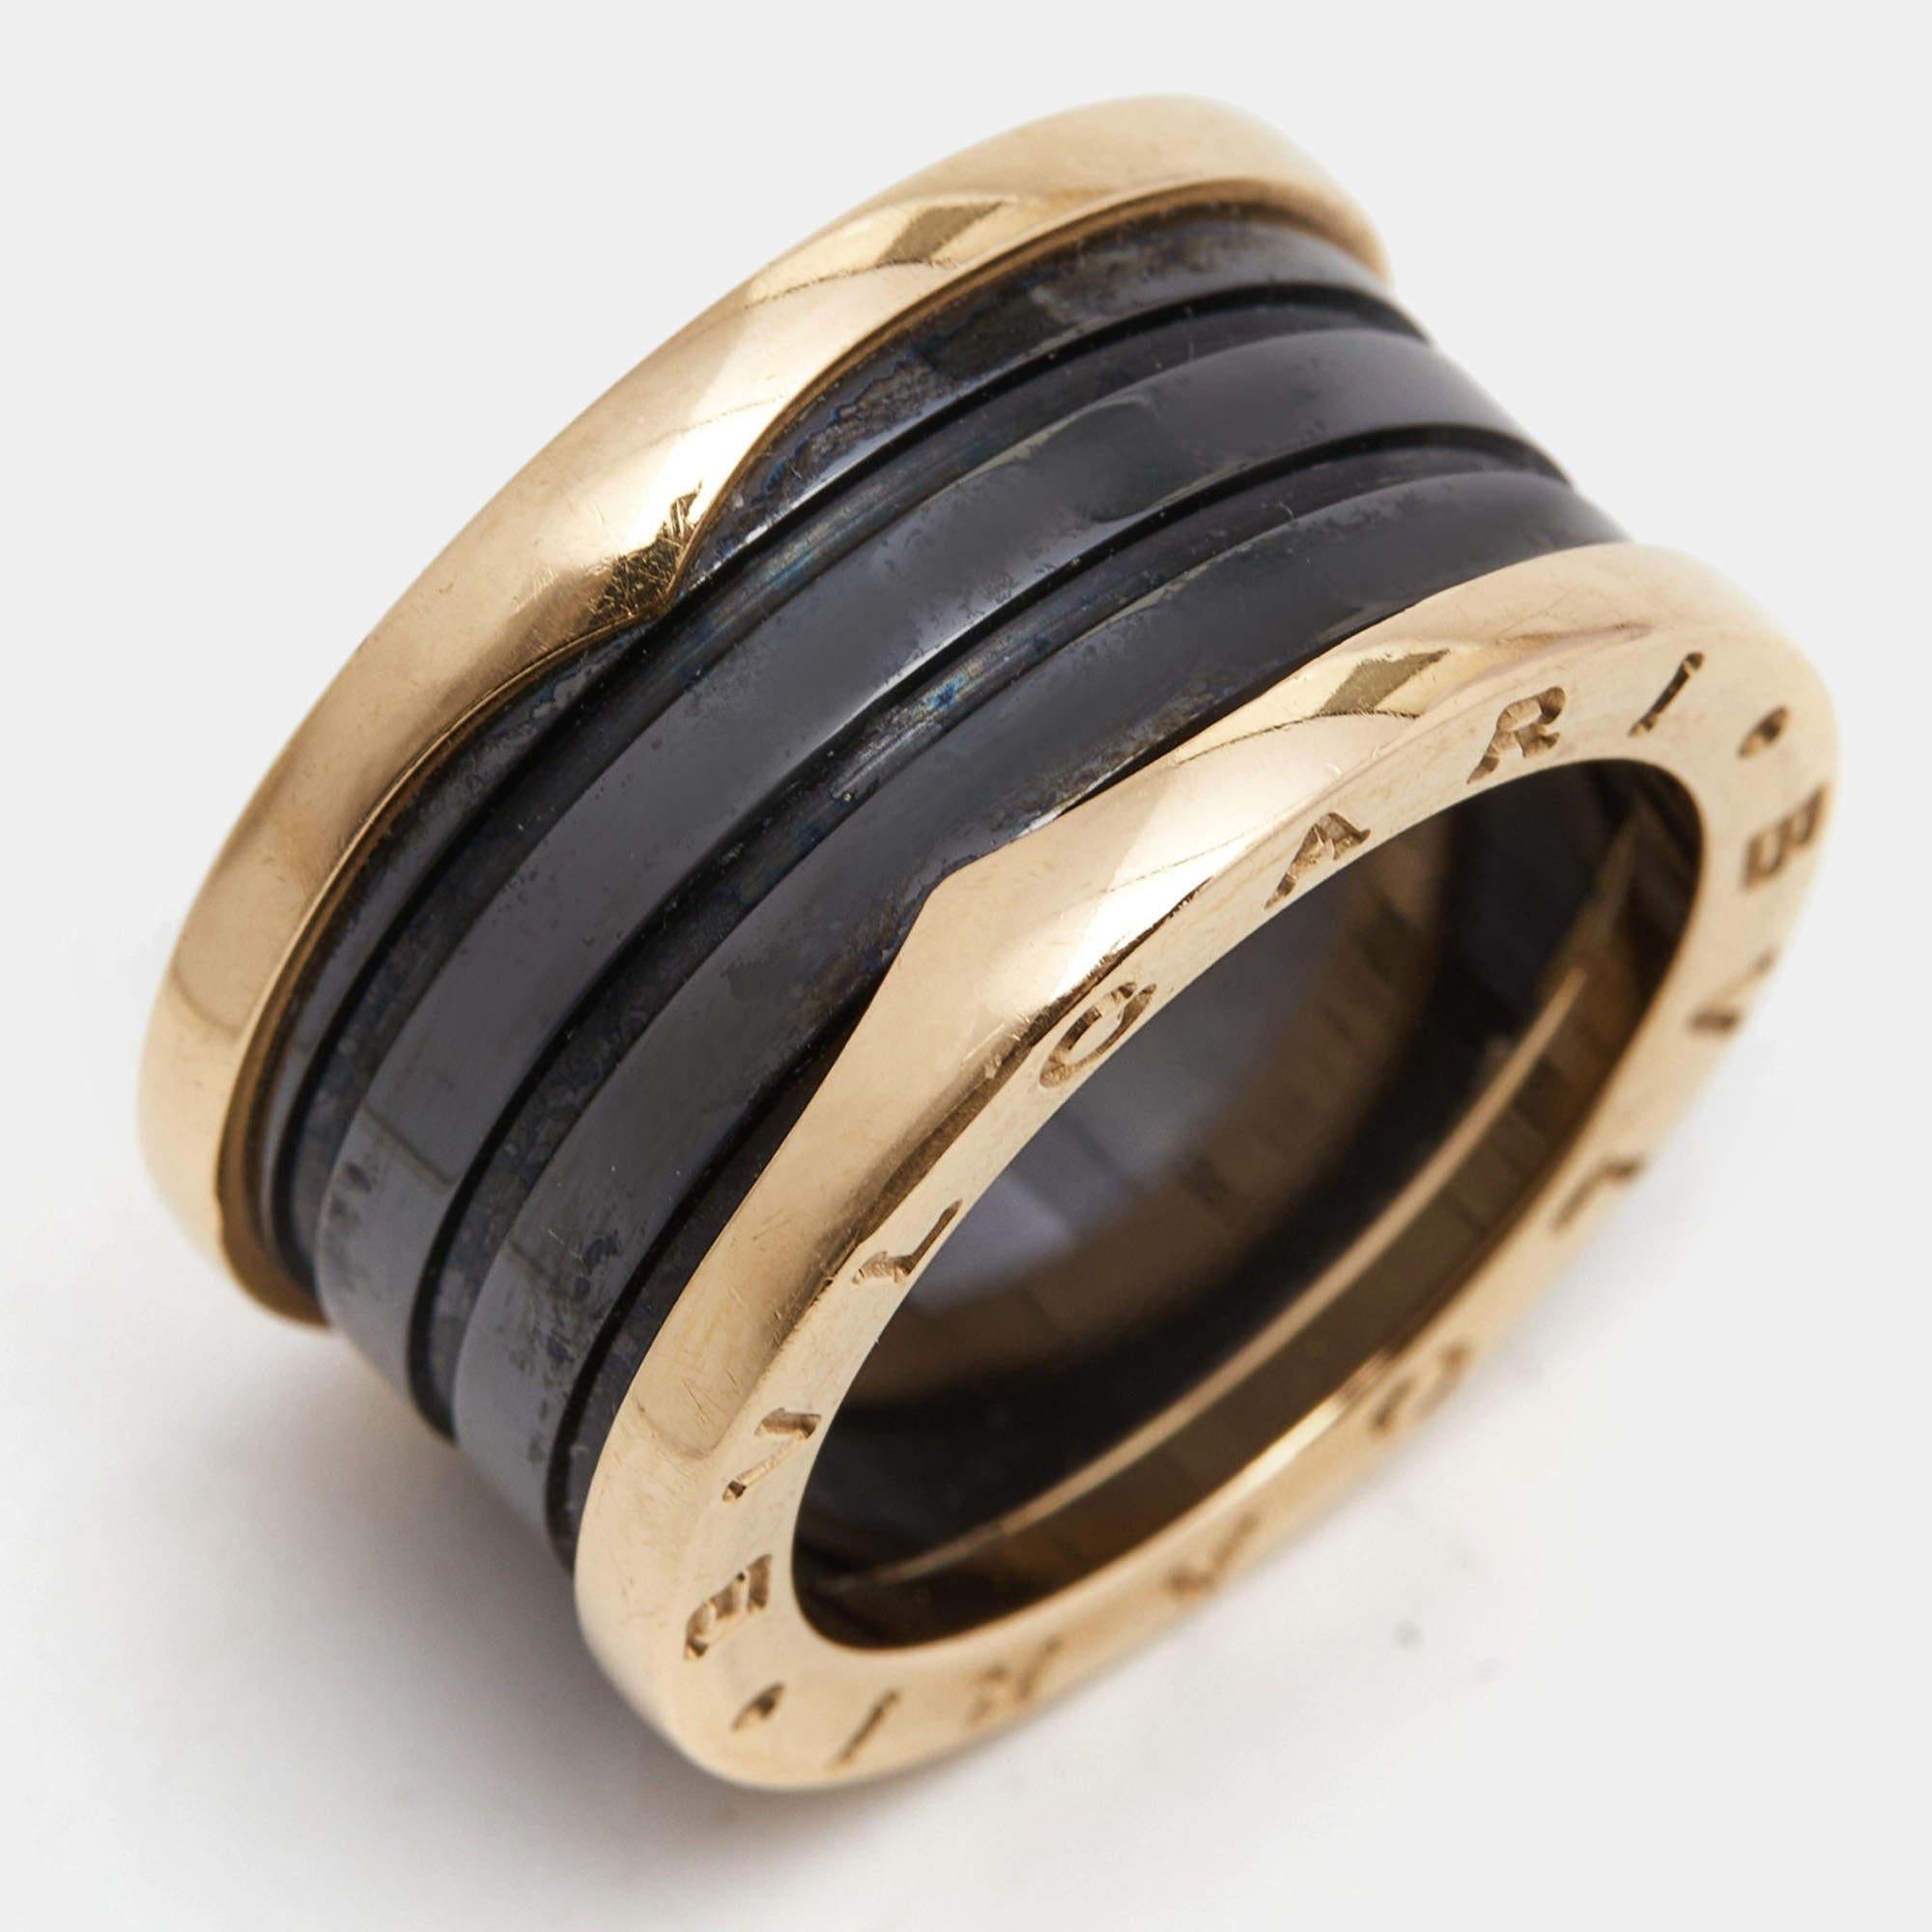 Bvlgari B.Zero1 4-Band Ceramic 18k Rose Gold Ring Size 55 4